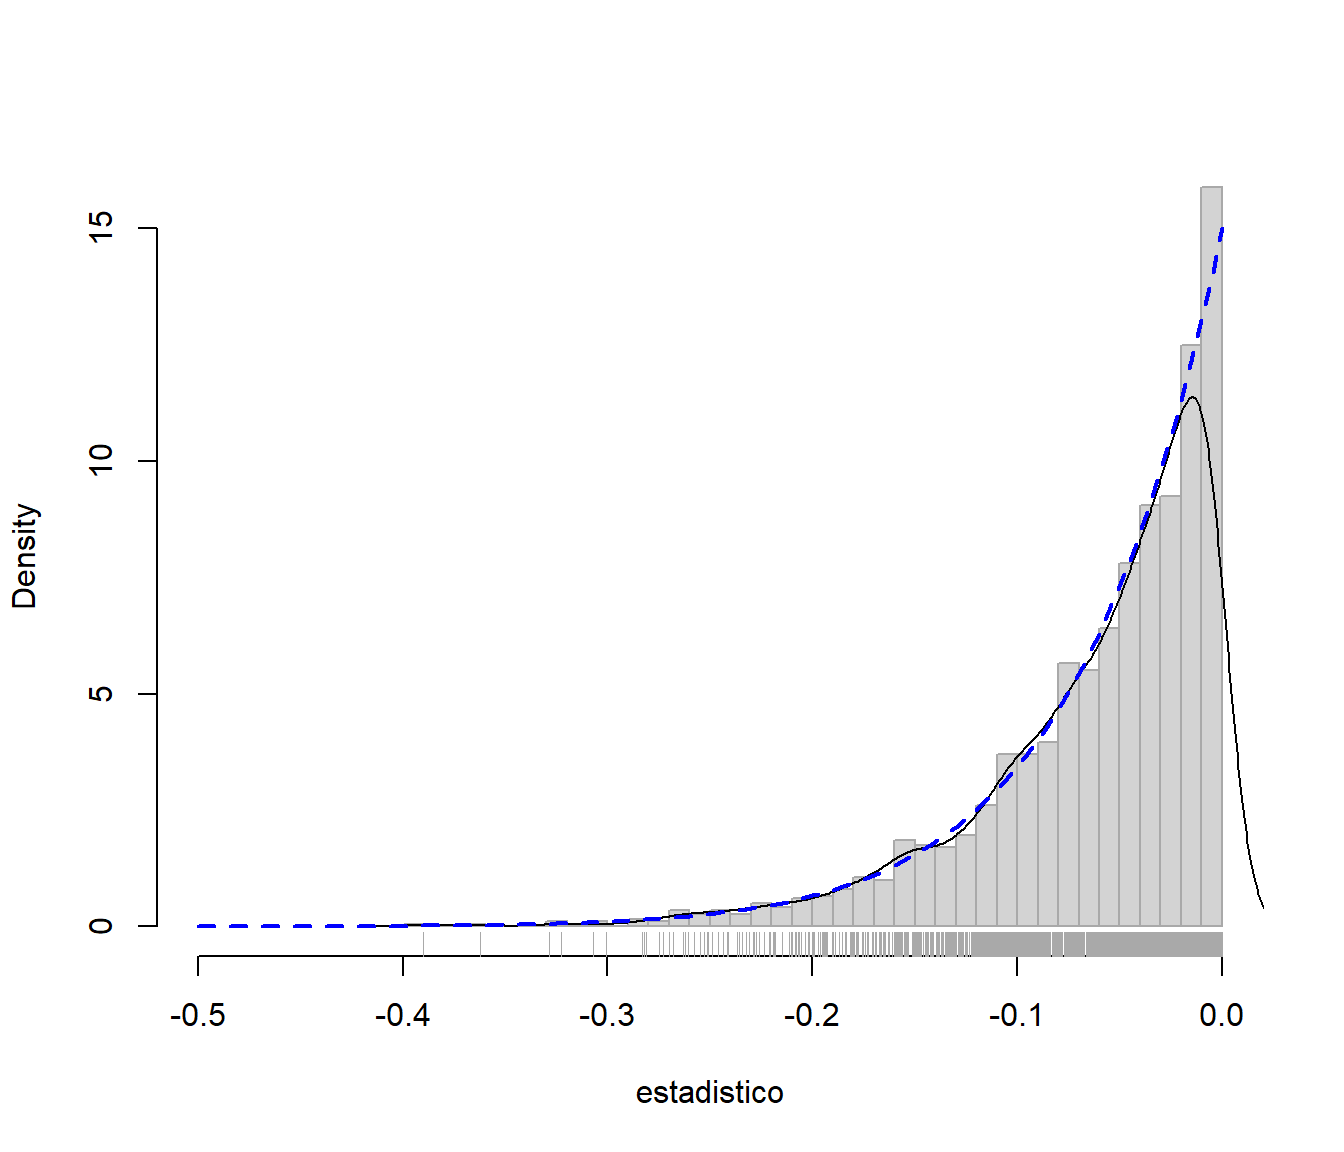 Distribución bootstrap paramétrica y distribución poblacional.